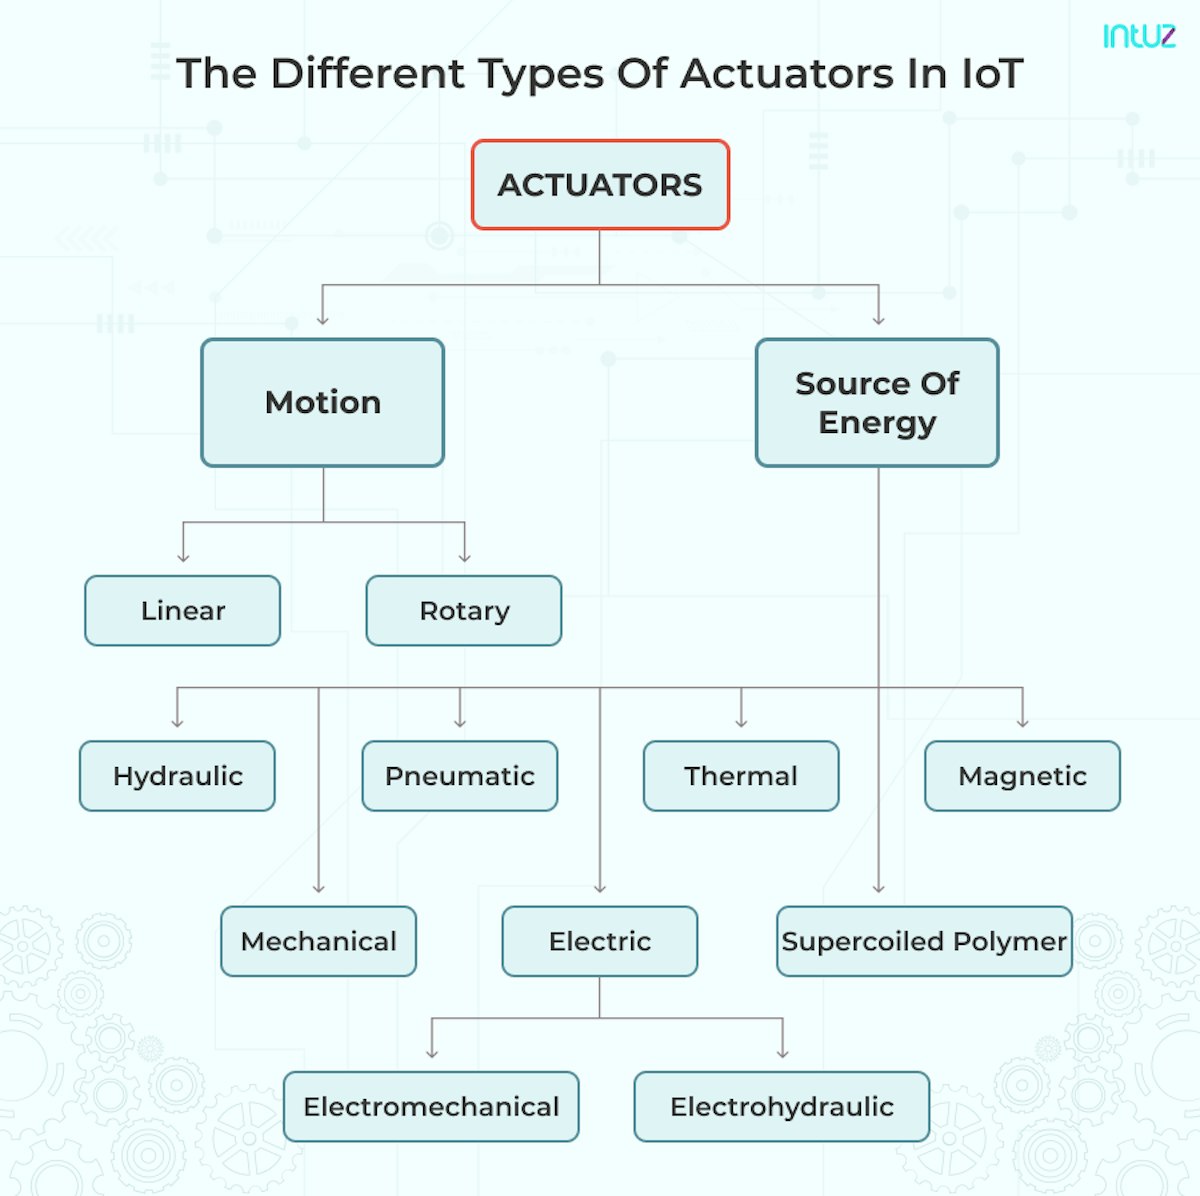 Types of Actuators in IoT